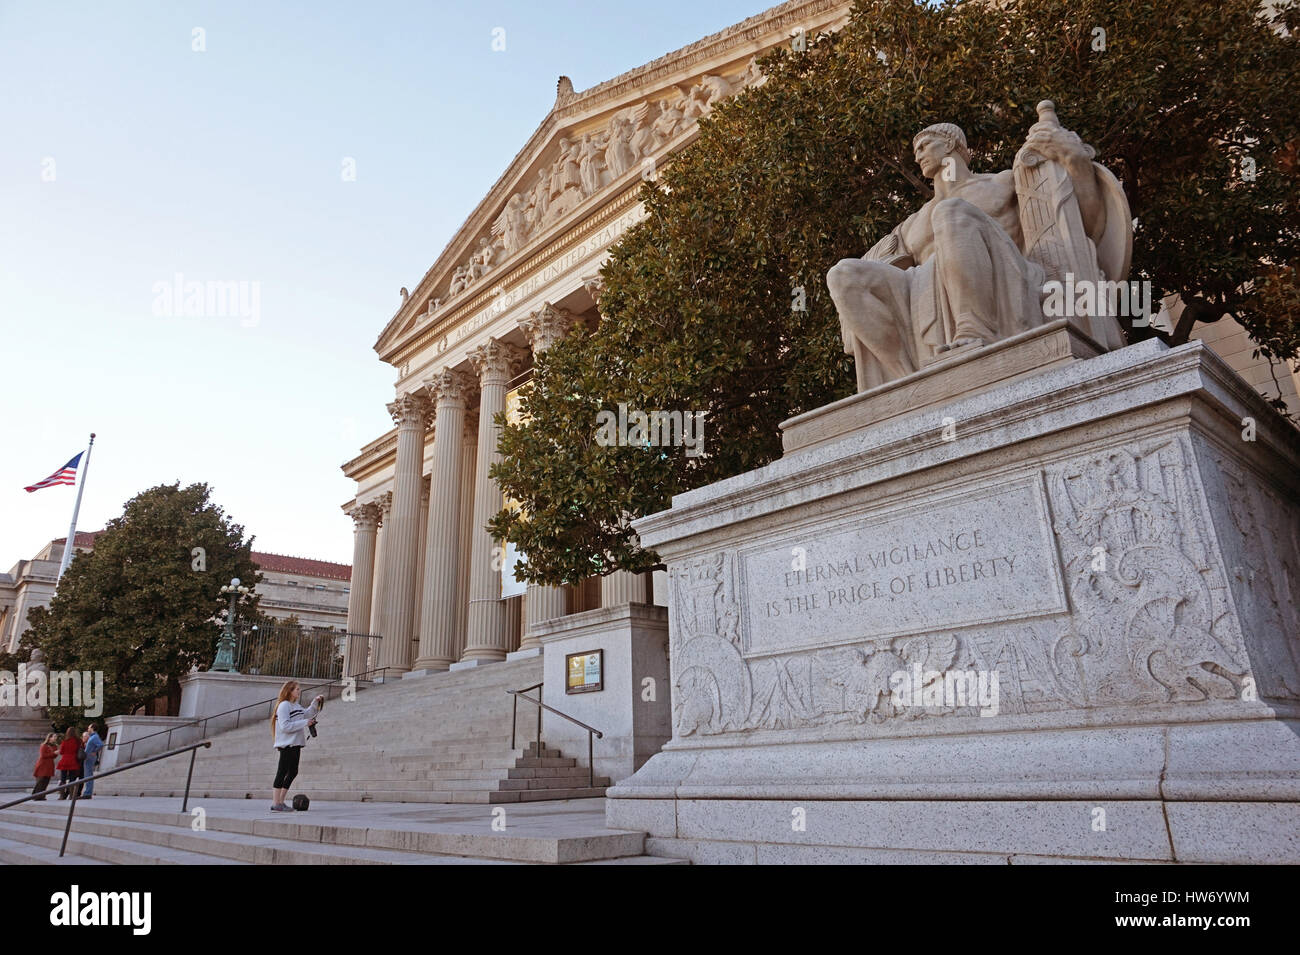 Ewige Wachsamkeit ist der Preis der Freiheit - Inschrift unterhalb einer Statue außerhalb der National Archives in Washington DC, USA Stockfoto